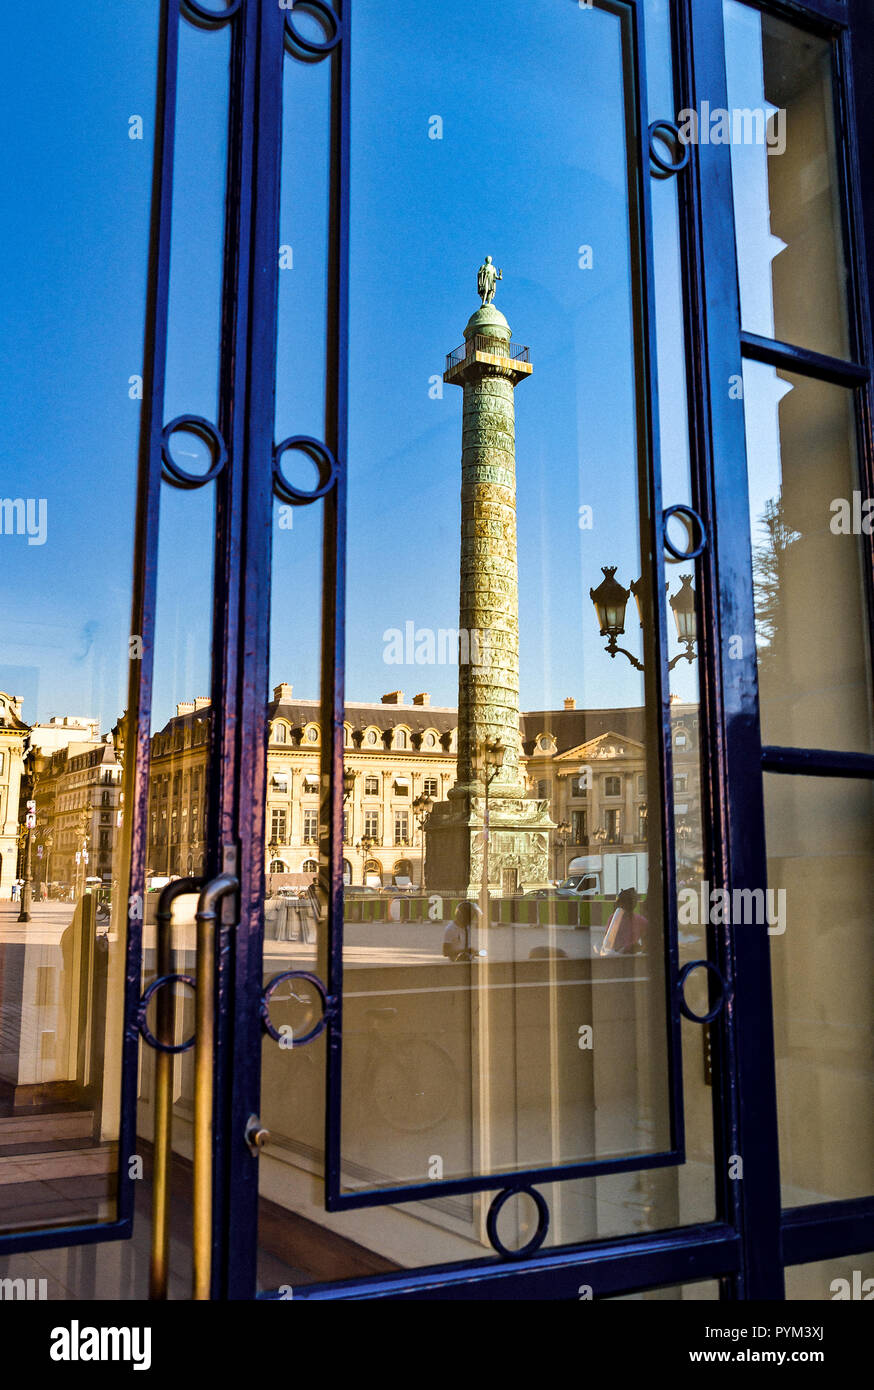 France Paris, reflet de la colonne sur une vitrine de la Place Vendôme Banque D'Images